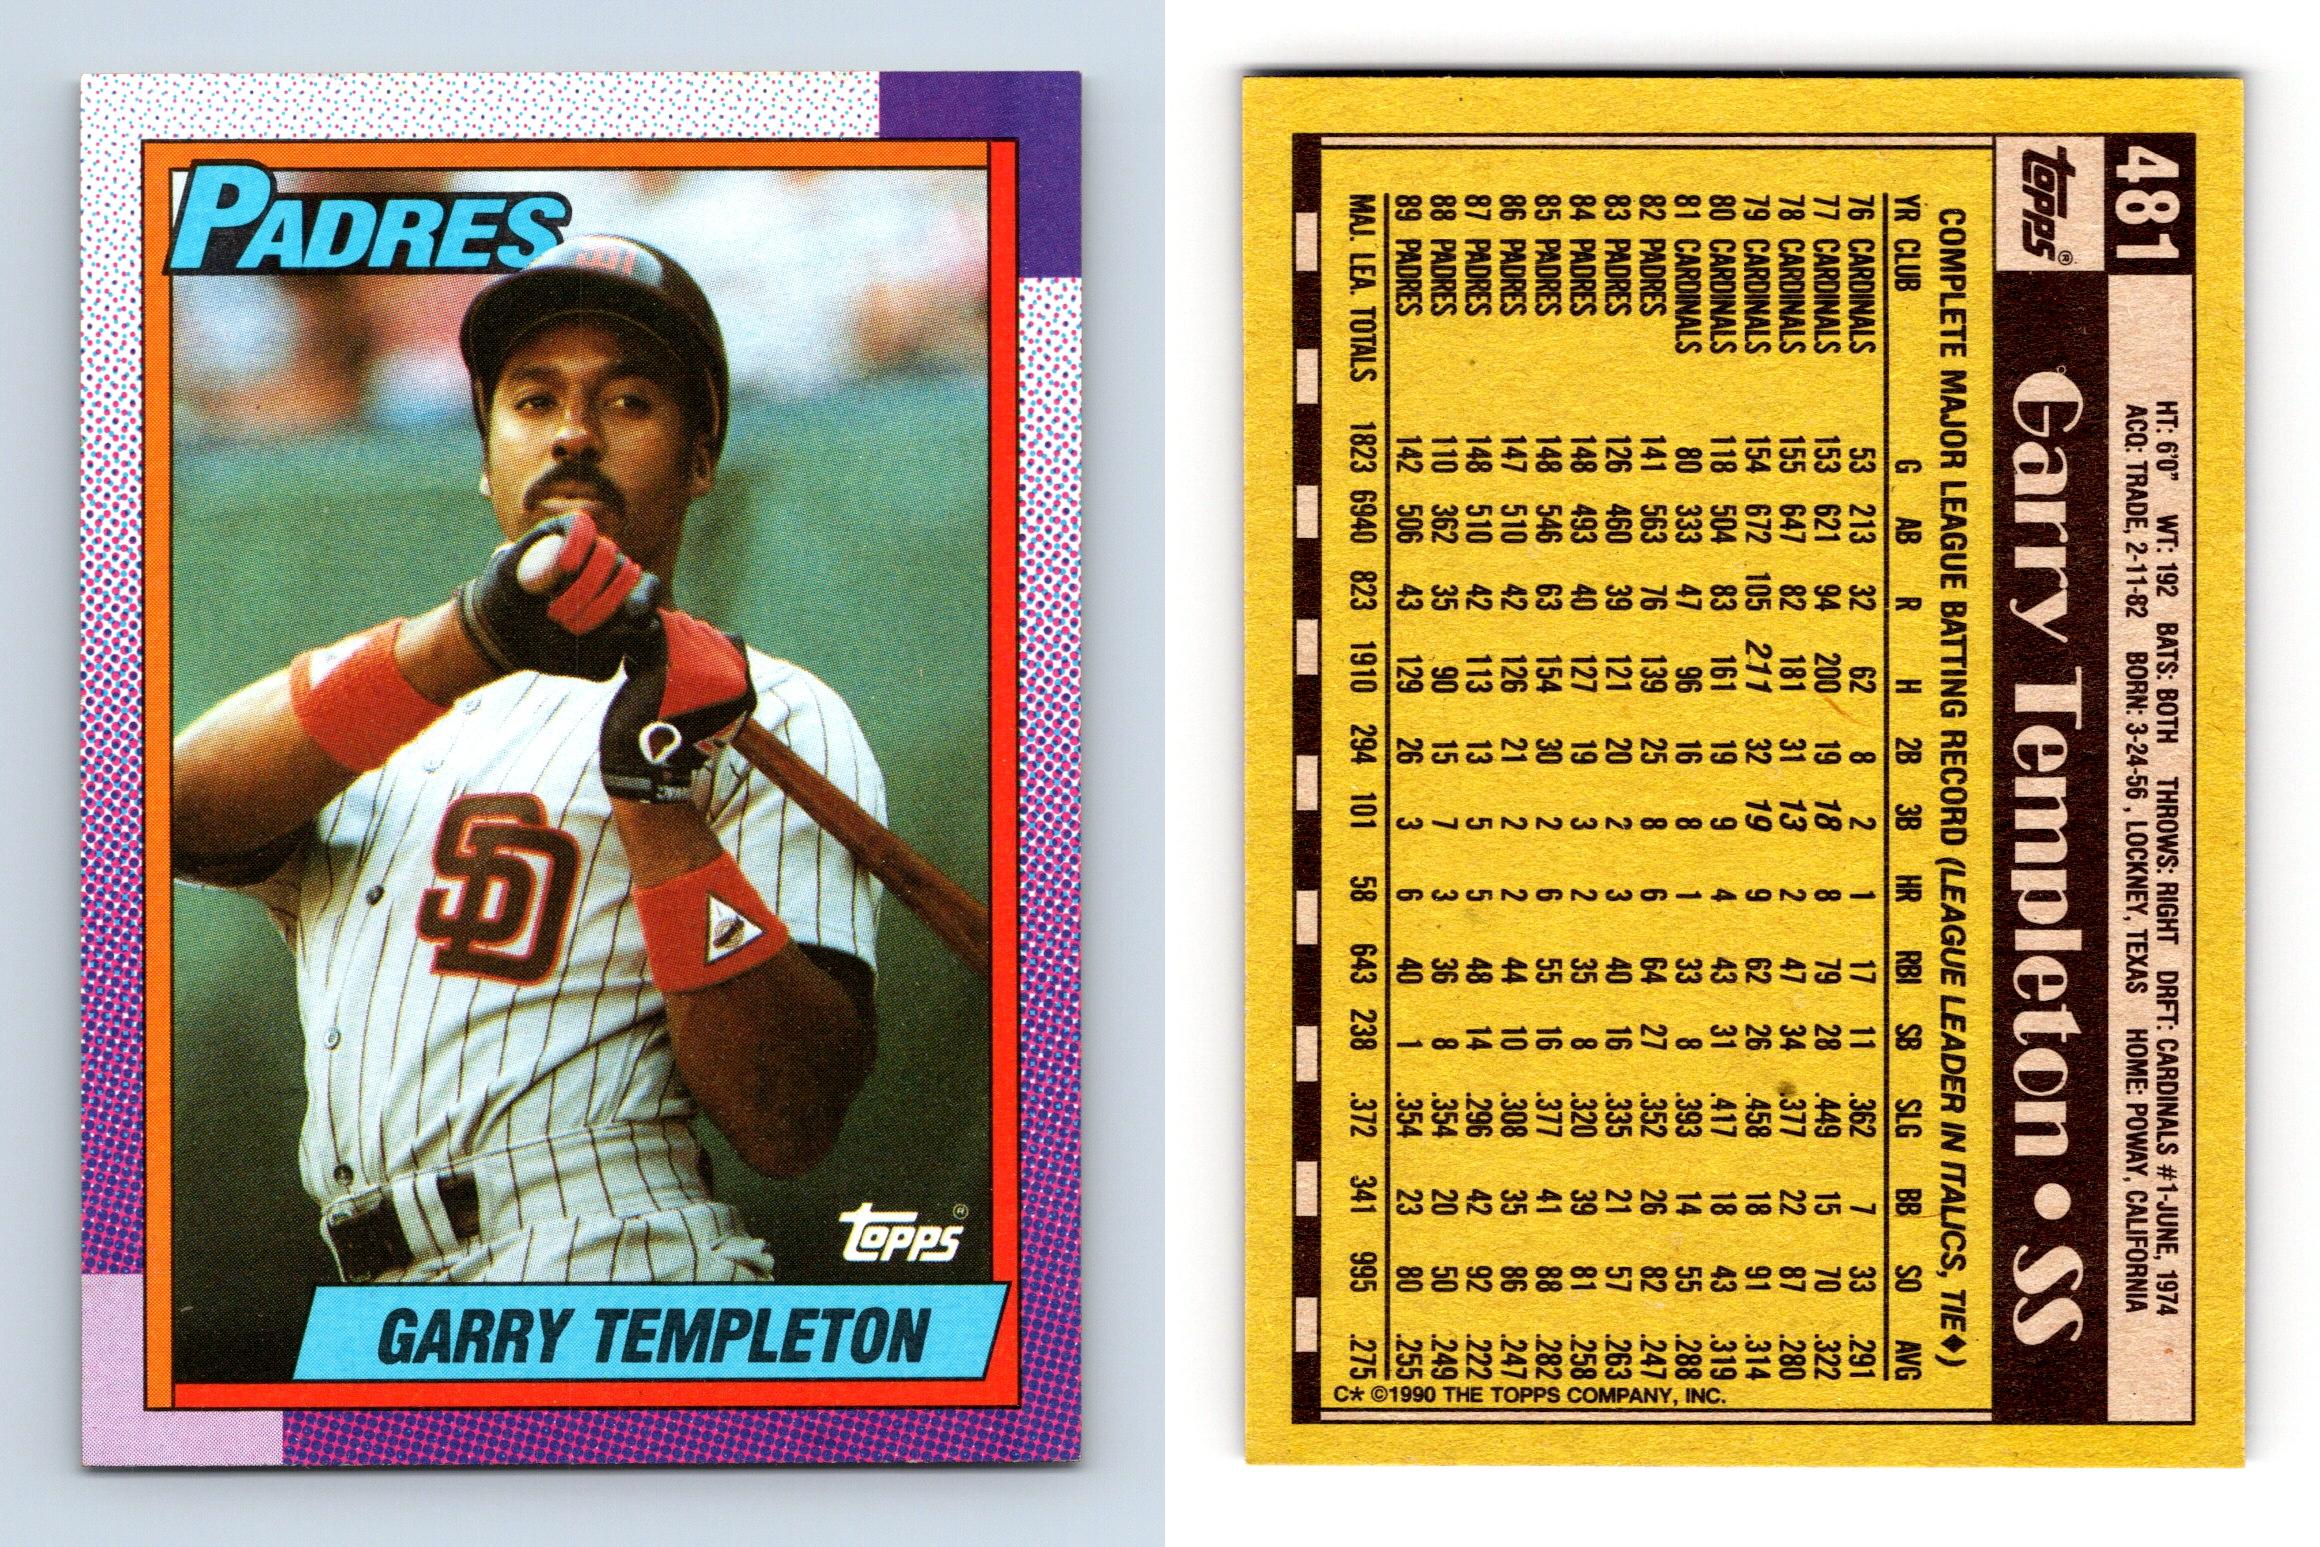 Garry Templeton - Padres #481 Topps 1990 Baseball Trading Card